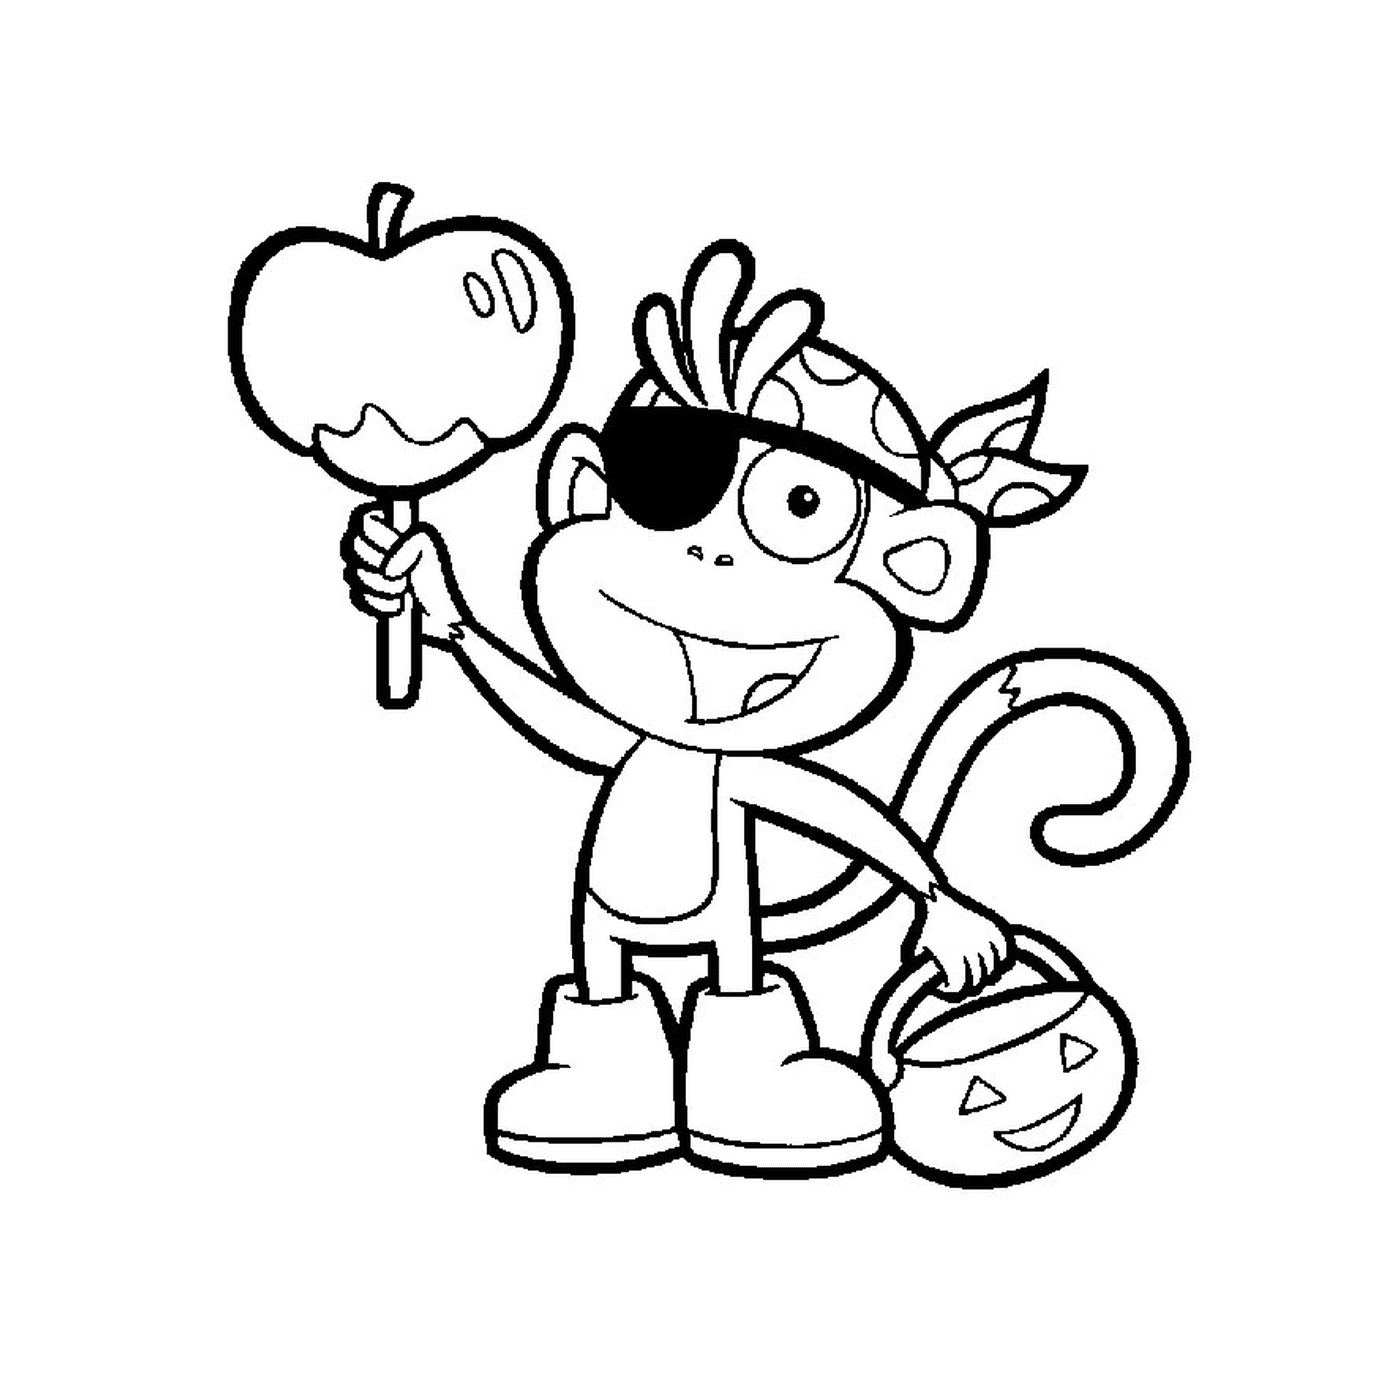   Babouche, le singe, tient une pomme 